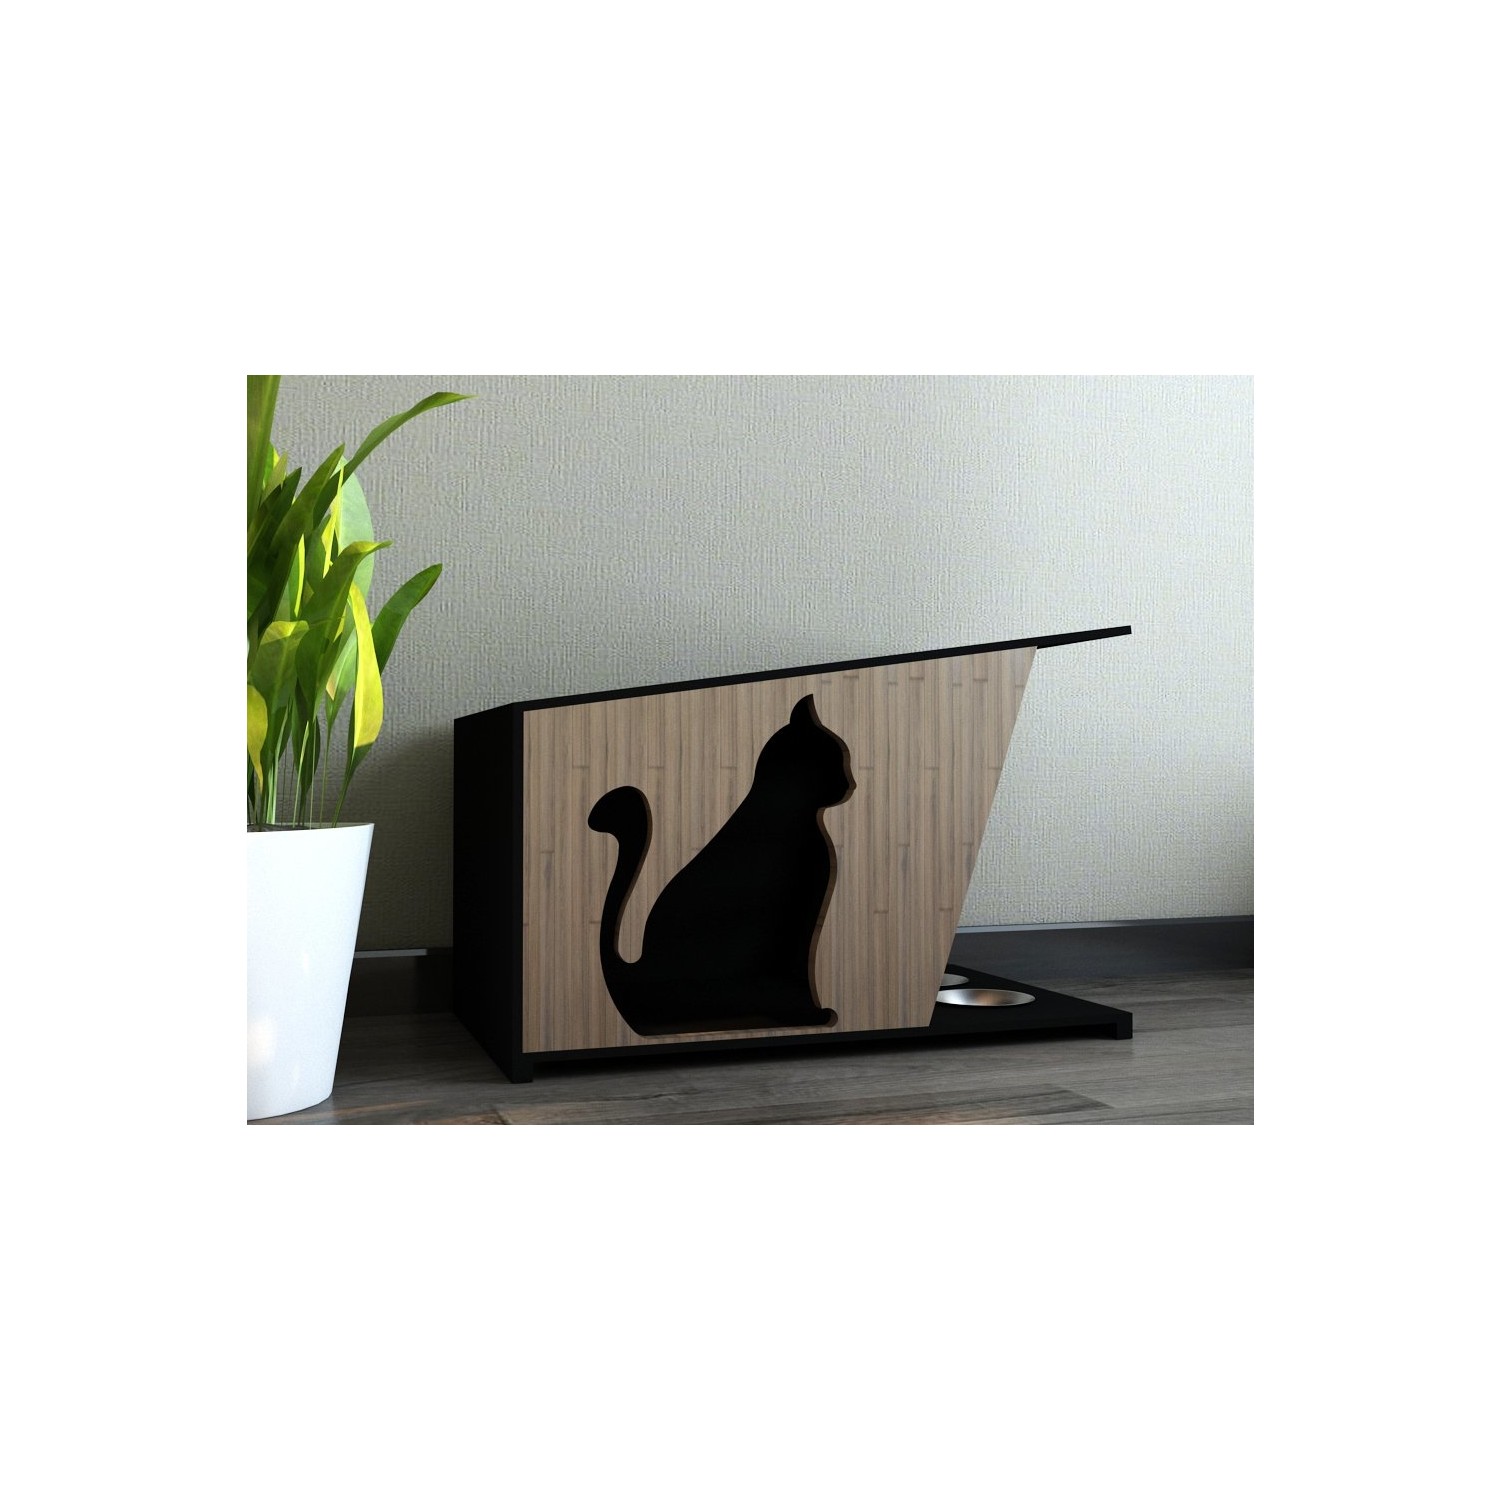 Odun Concept Özel Tasarım Kedi Evi Ahşap Gölge Fiyatı